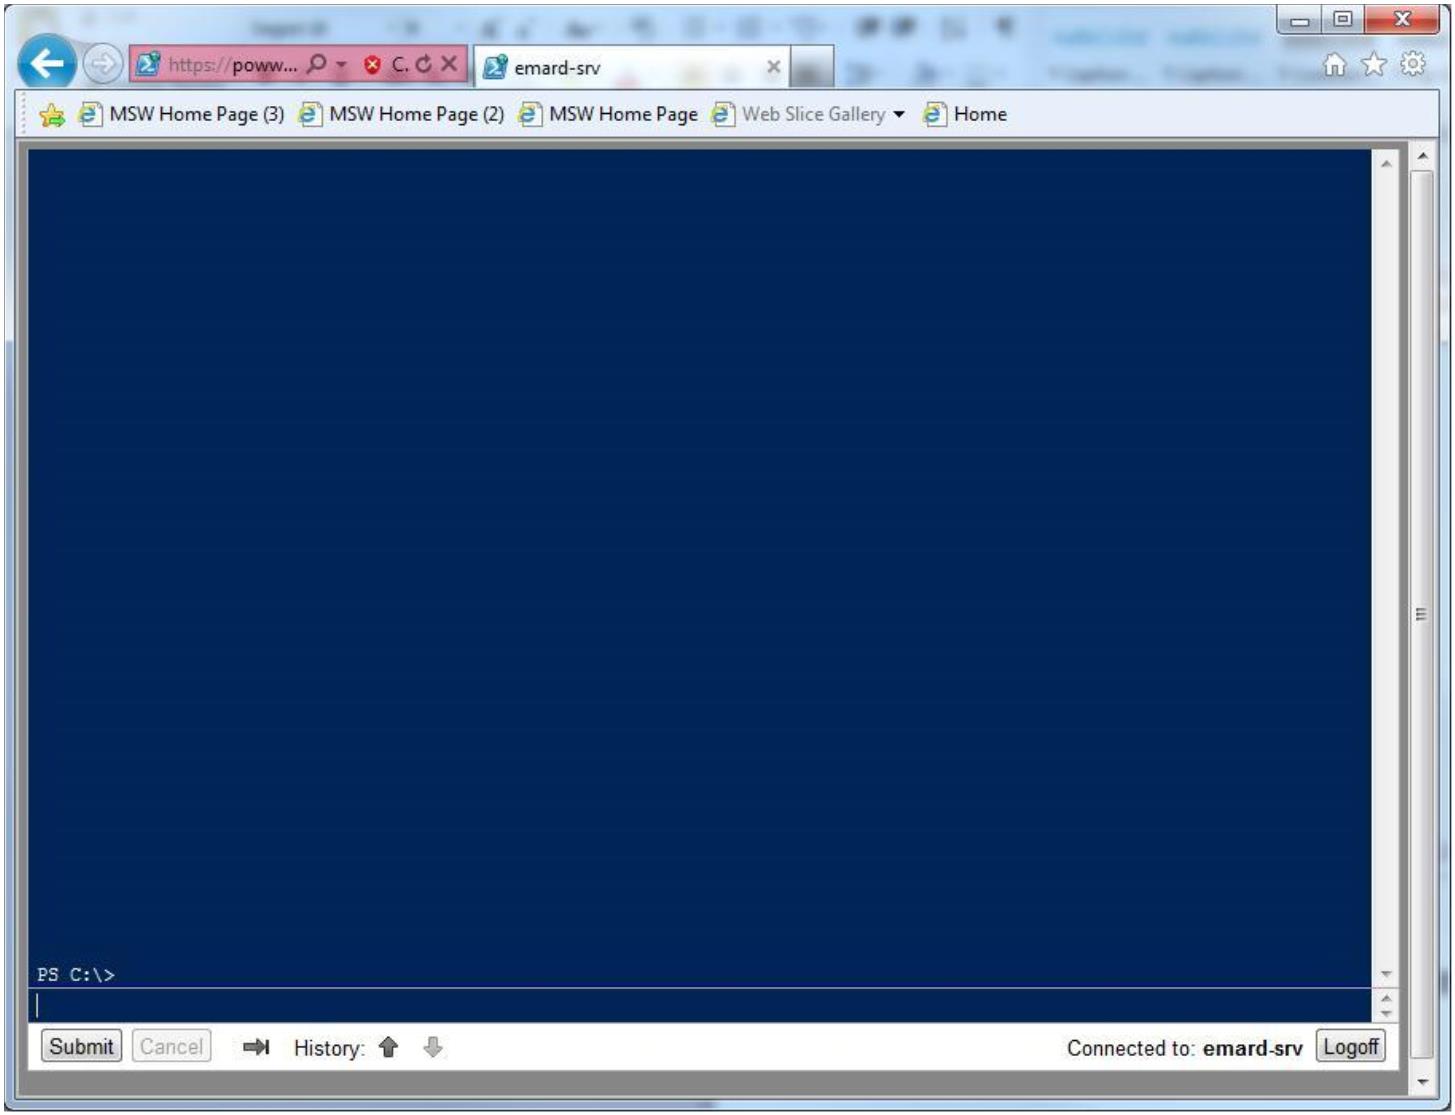 Windows PowerShell 3.0 技术描述 - Windows Server 2012 技术白皮书